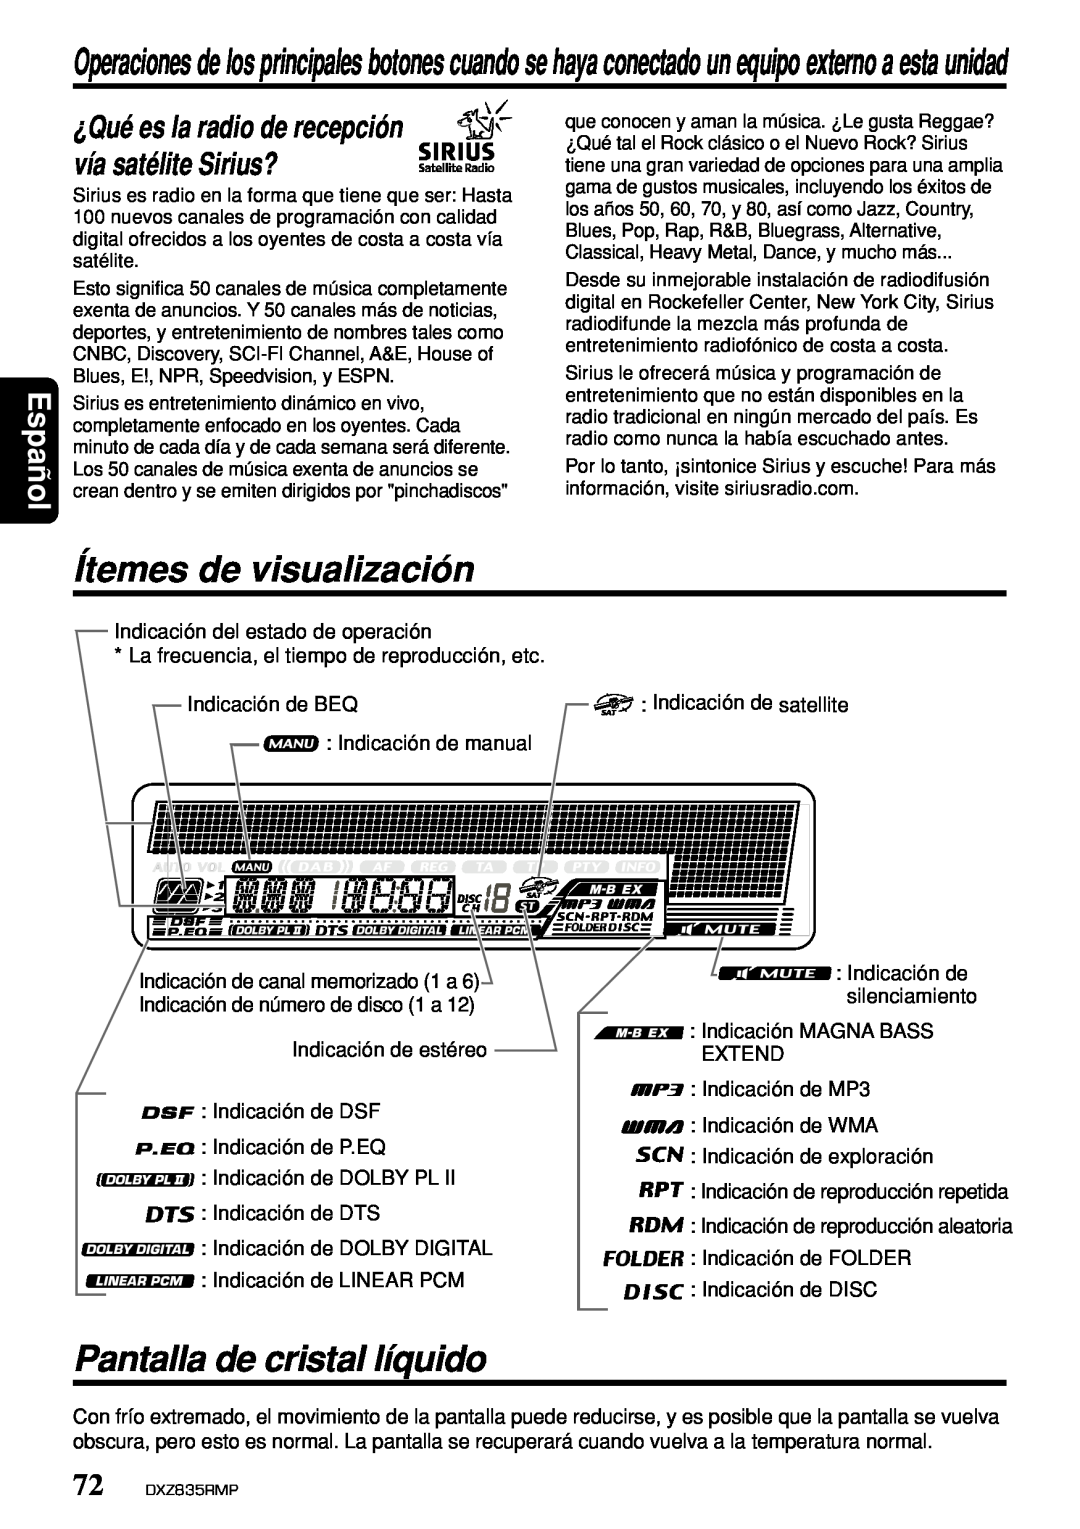 Clarion DXZ835MP owner manual Ítemes de visualización, Pantalla de cristal líquido, Español 